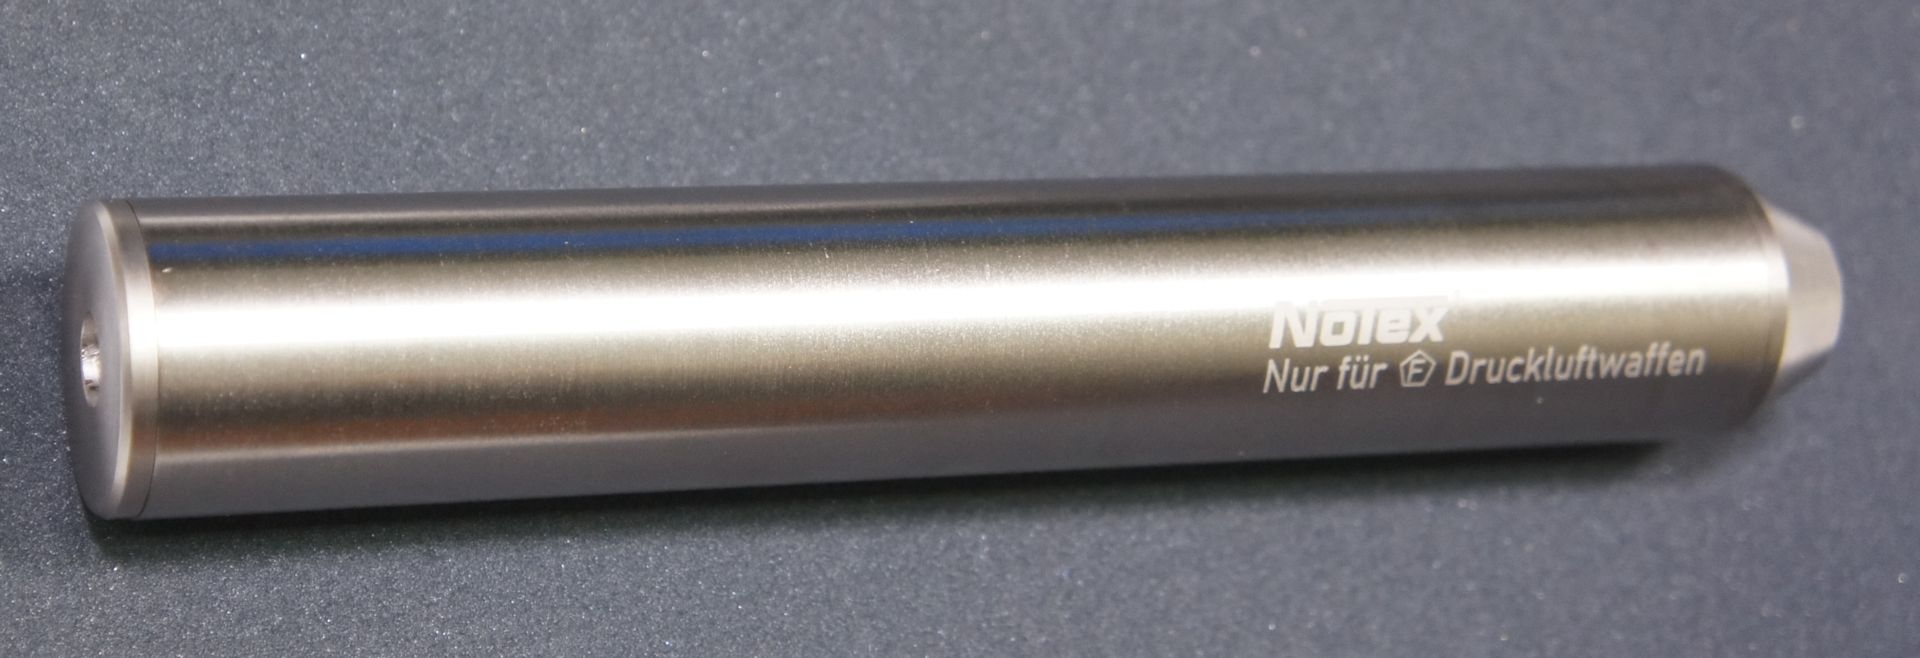 vernickelter Schalldämpfer der Marke Notex für Druckluftwaffen im Kal. 4,5  und 5,5mm mit Laufgewinde 0.5 Zoll UNF20